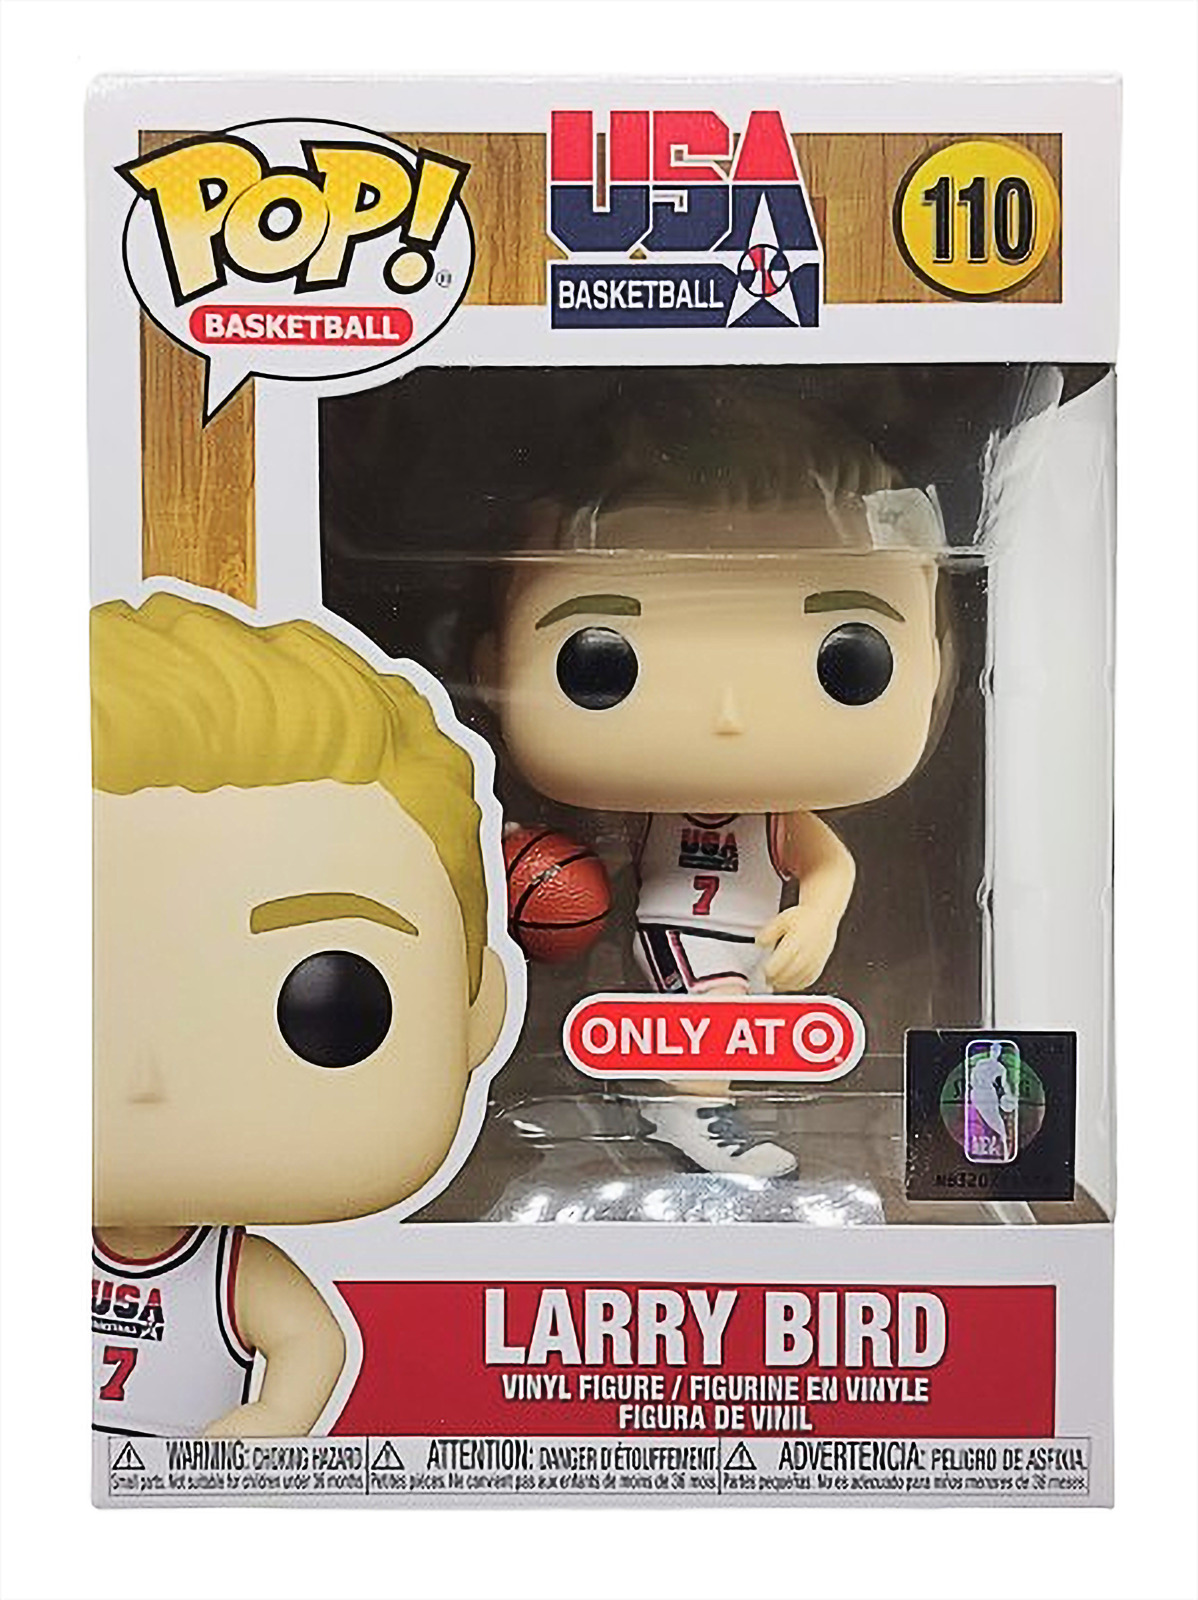 Funko Pop Basketball Larry Bird 110 Target Exclusive Vinyl Figure